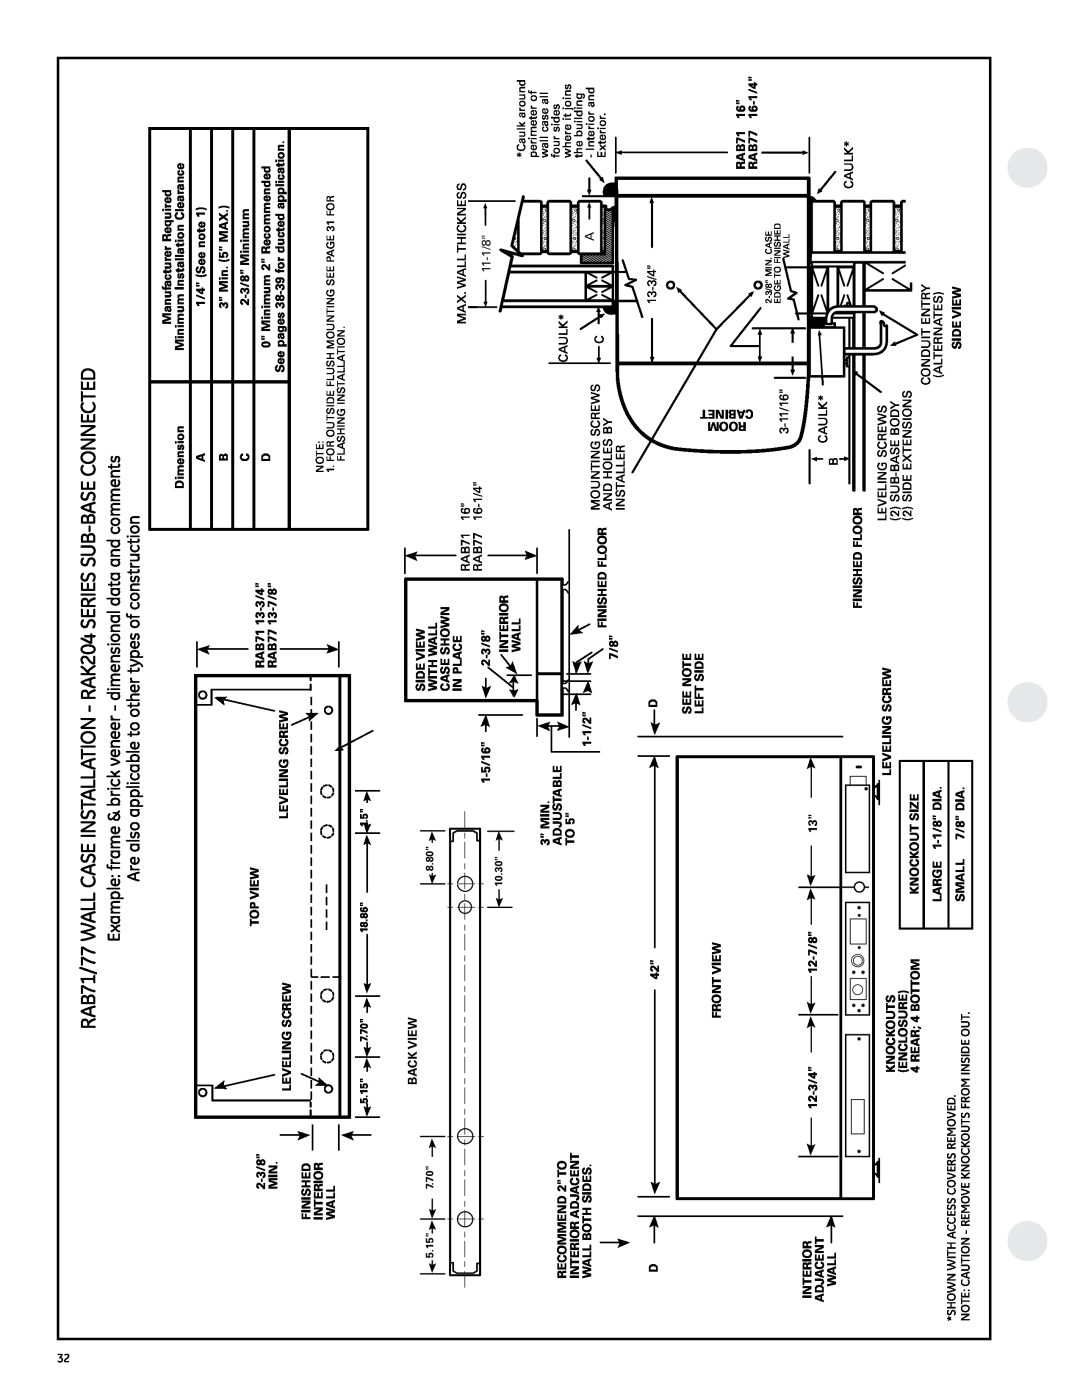 GE 2800 manual 1/4 See note 